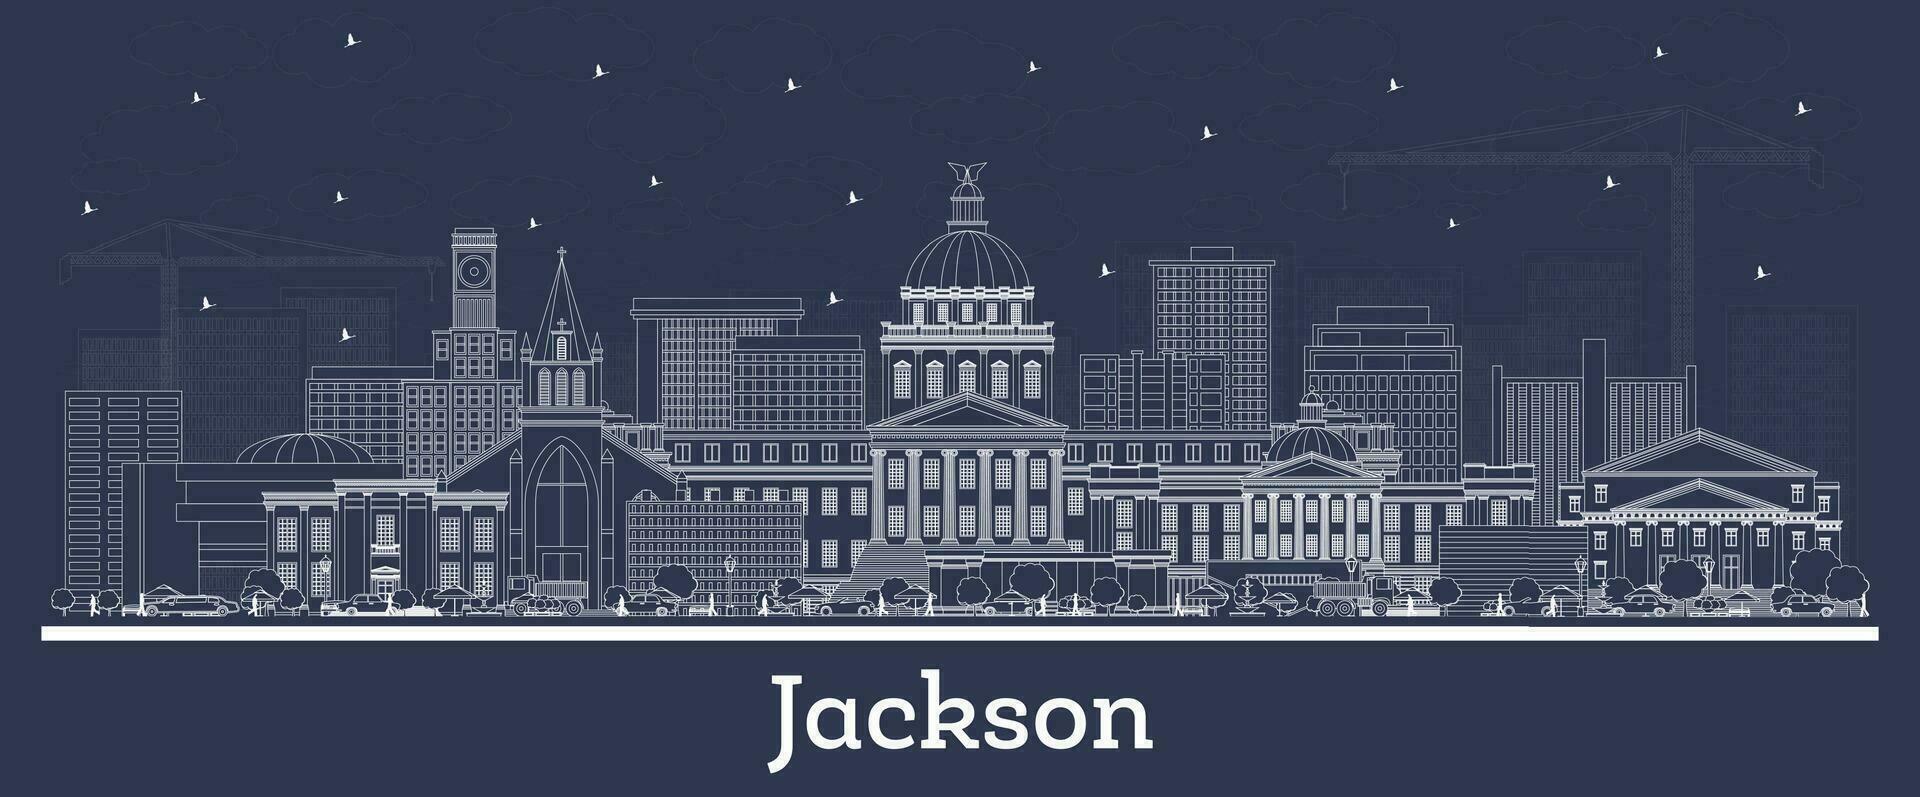 schets Jackson Mississippi stad horizon met wit gebouwen. bedrijf reizen en toerisme concept met historisch architectuur. Jackson Verenigde Staten van Amerika stadsgezicht met oriëntatiepunten. vector